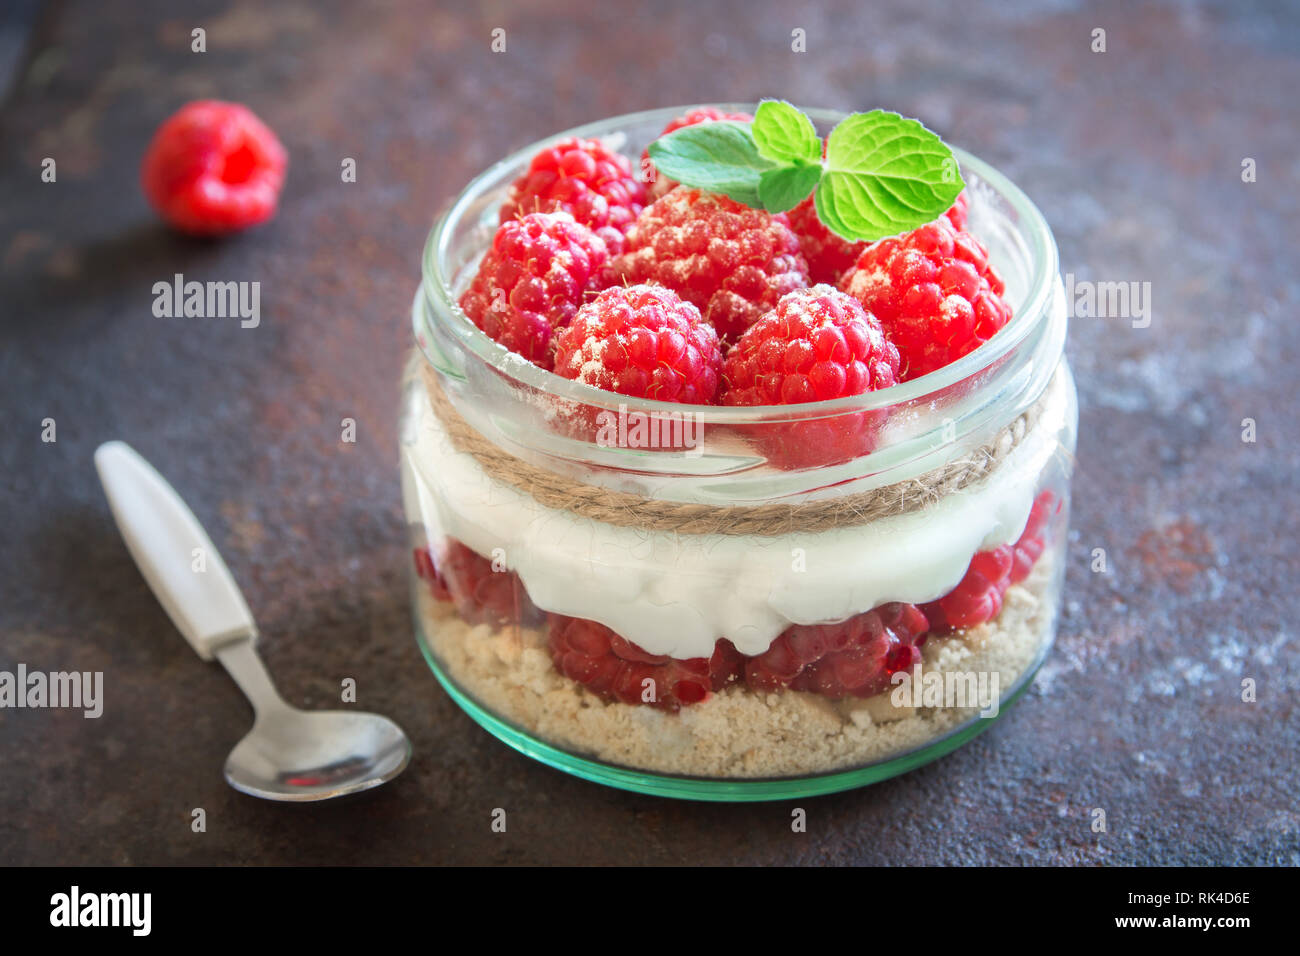 Raspberry layered dessert - cheesecake in glass jar with fresh raspberries and cream cheese. Healthy homemade summer berry dessert. Stock Photo